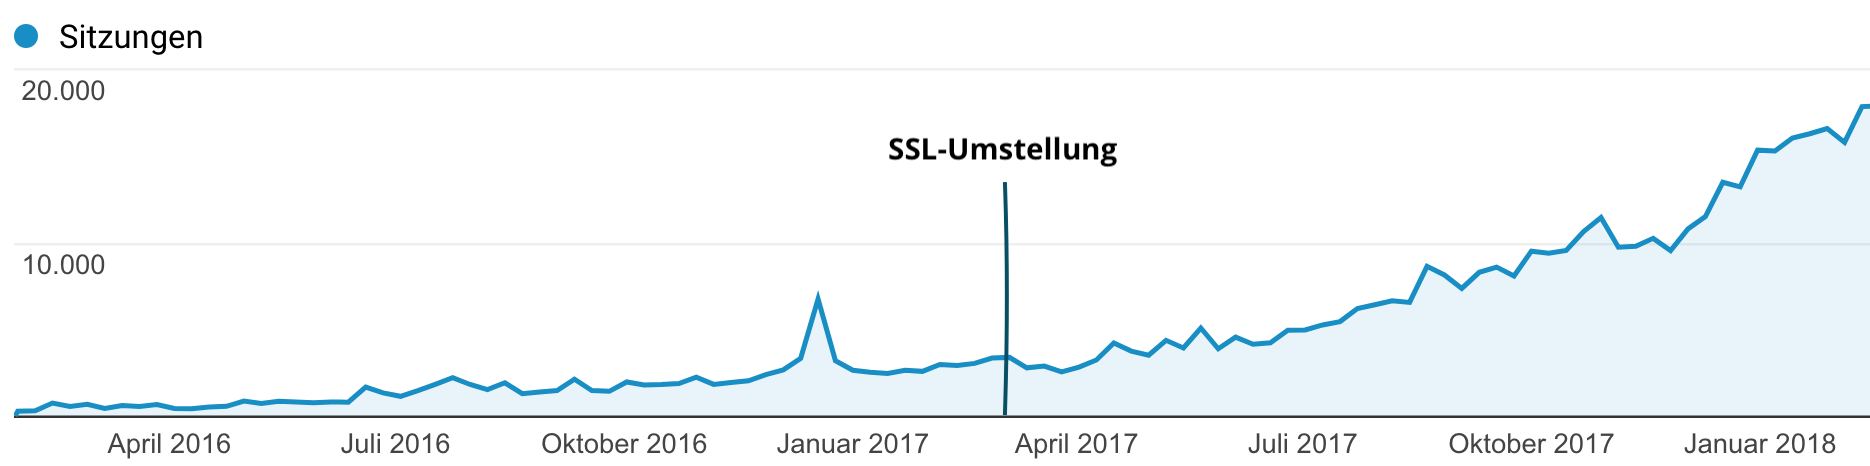 SSL-Umstellung Trafficentwicklung - Leichter Einbruch nach der Umstellung, dann erholt sich und steigt der Traffic